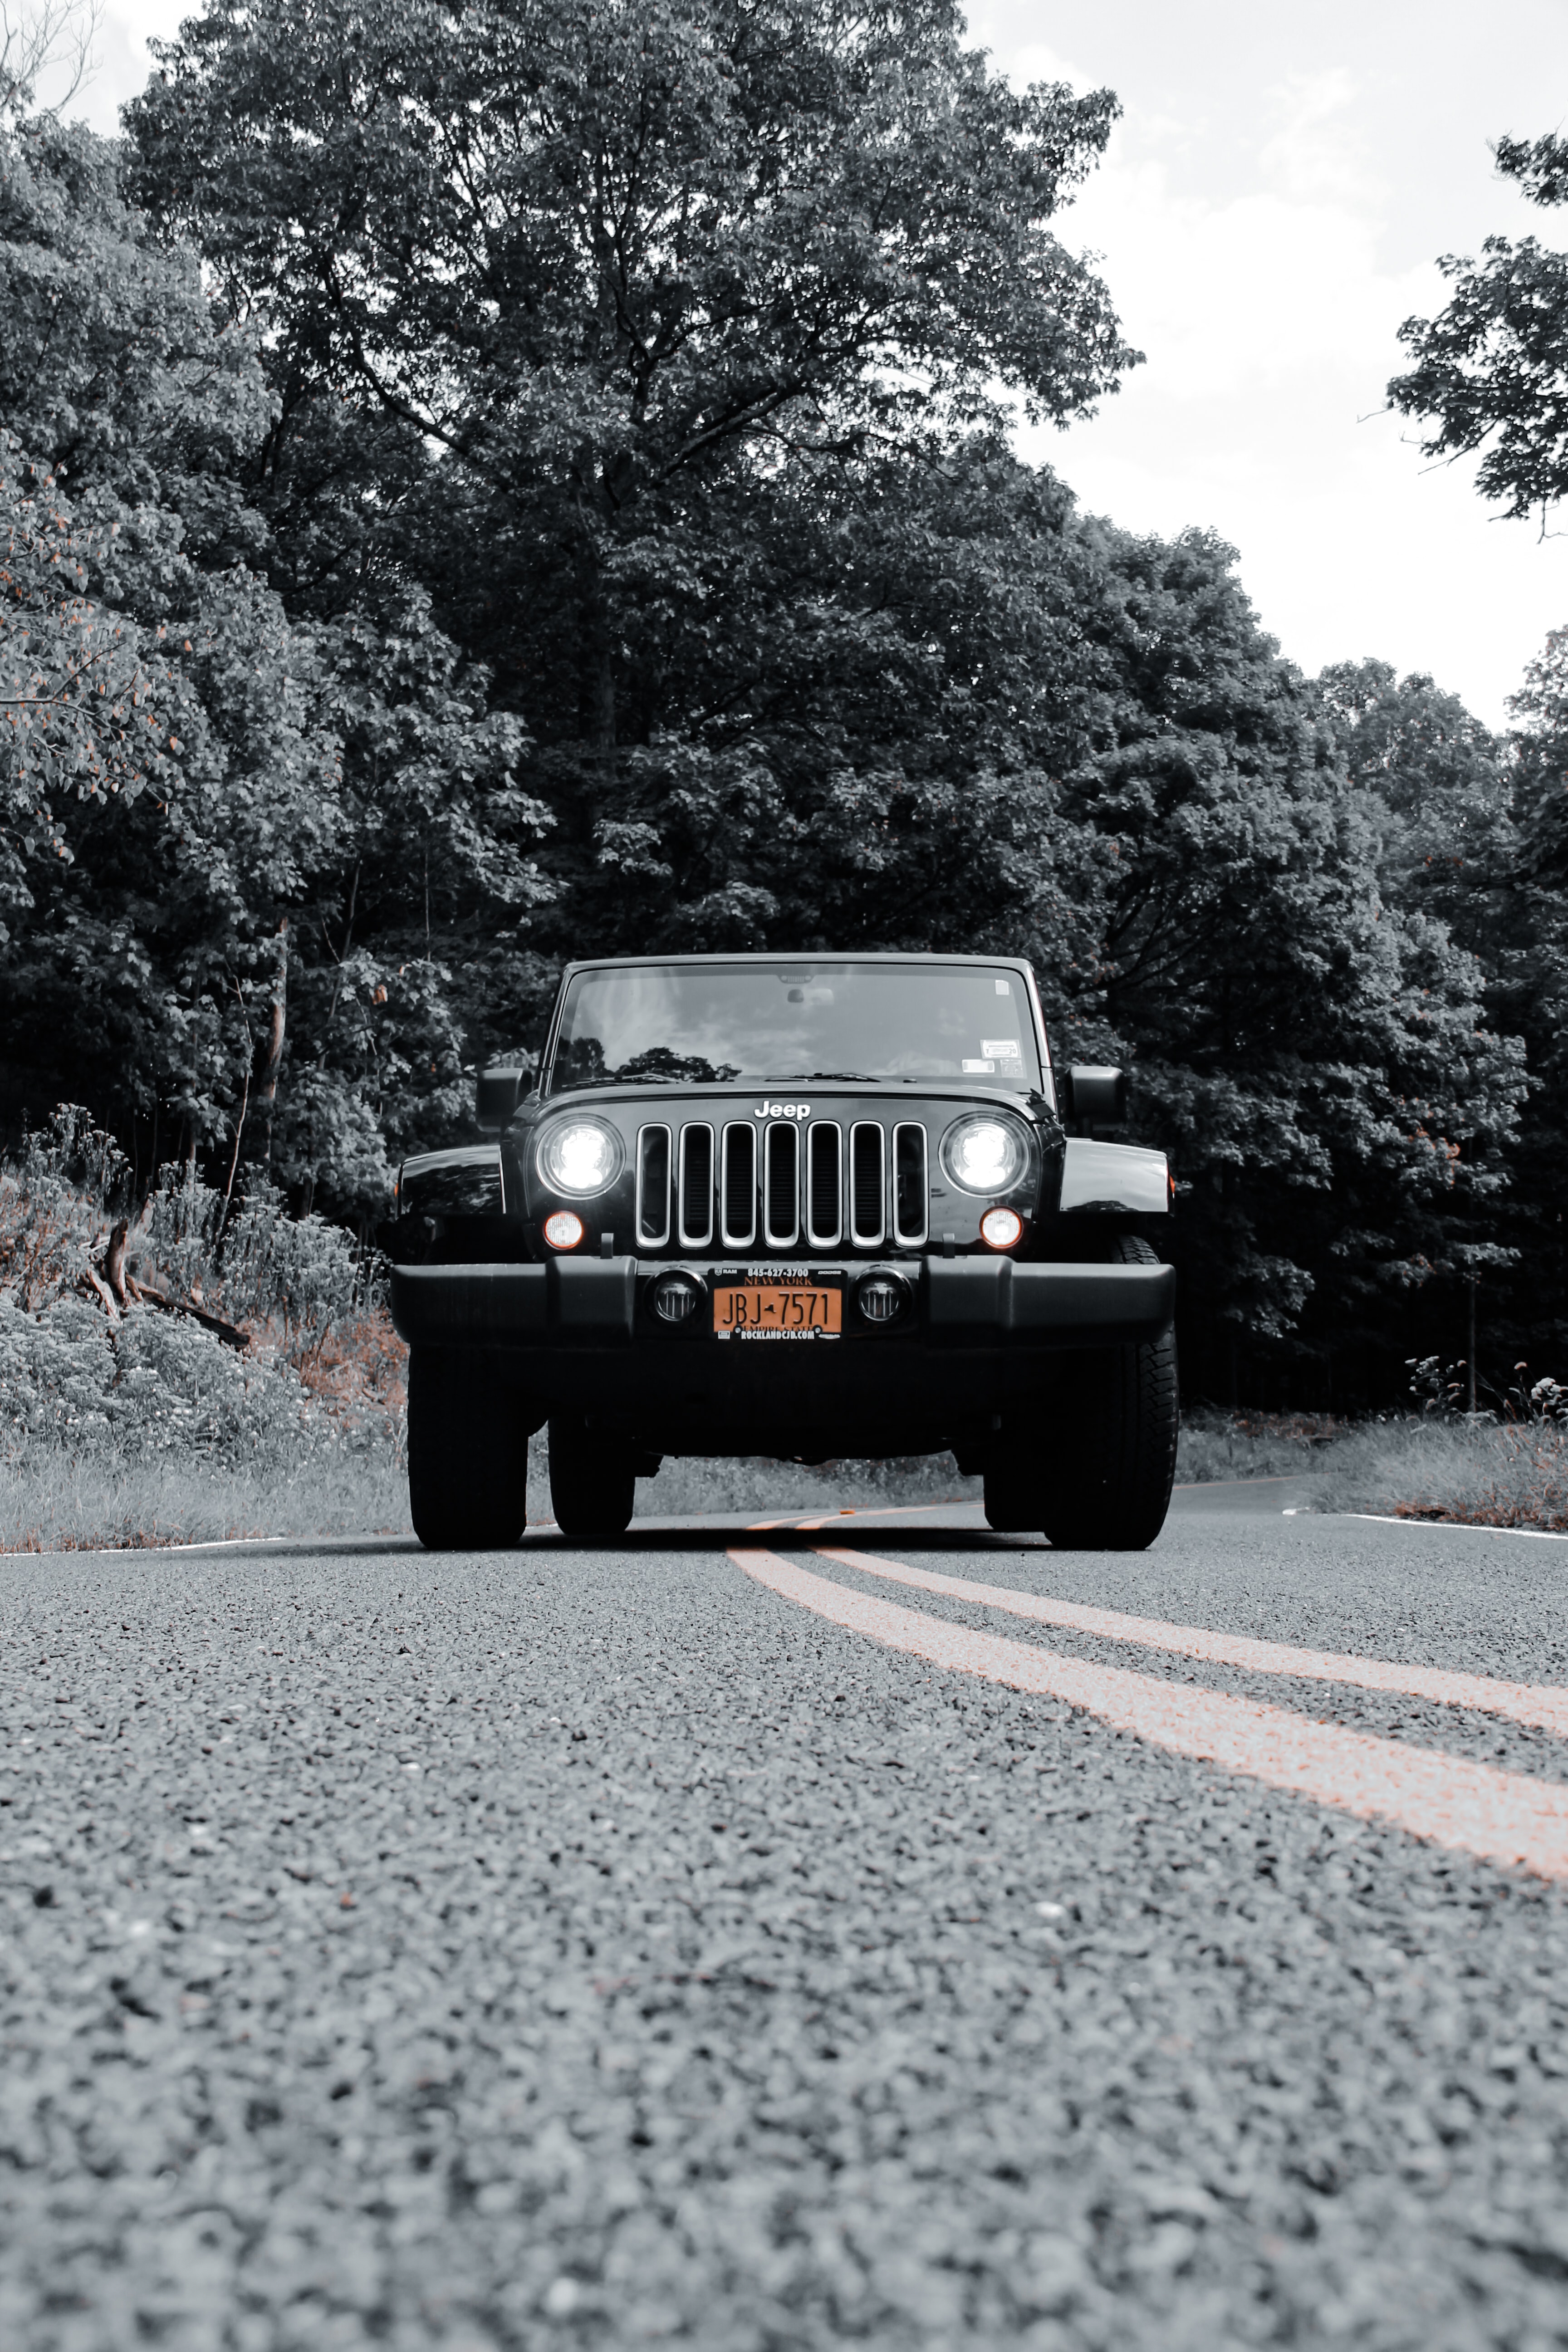 141025 descargar imagen jeep, faros, coches, luces, carro, coche, todoterreno, bw, chb, jeep wrangler: fondos de pantalla y protectores de pantalla gratis